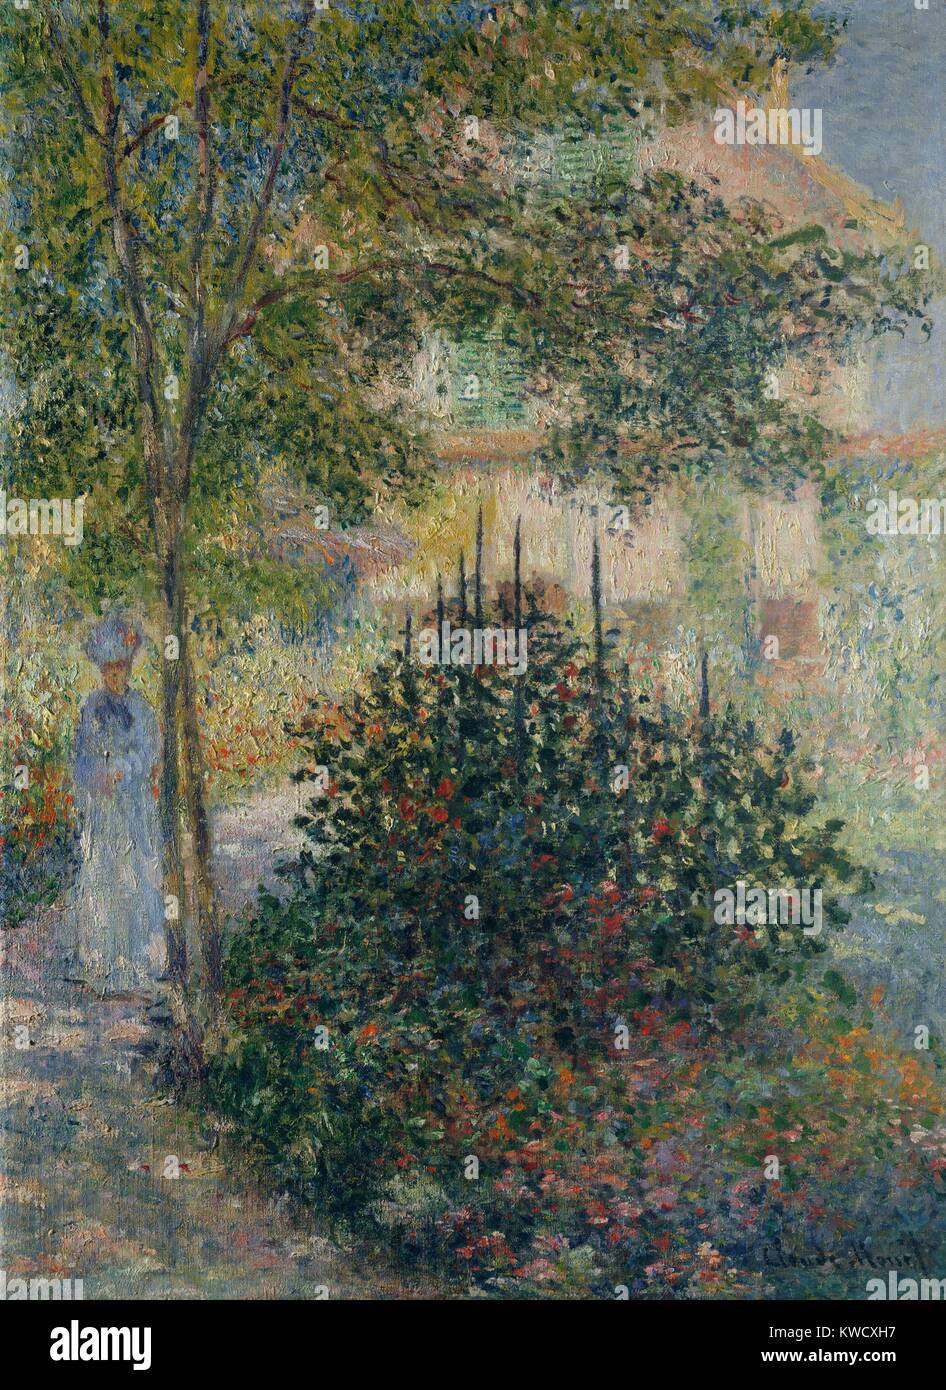 Camille Monet dans le jardin à Argenteuil, Claude Monet, peinture à l'huile impressionnistes français. Monet a appliqué la peinture en petites daubs sur toute la toile, un style qui est devenu caractéristique de ses œuvres (BSLOC matures 2017 3 25) Banque D'Images